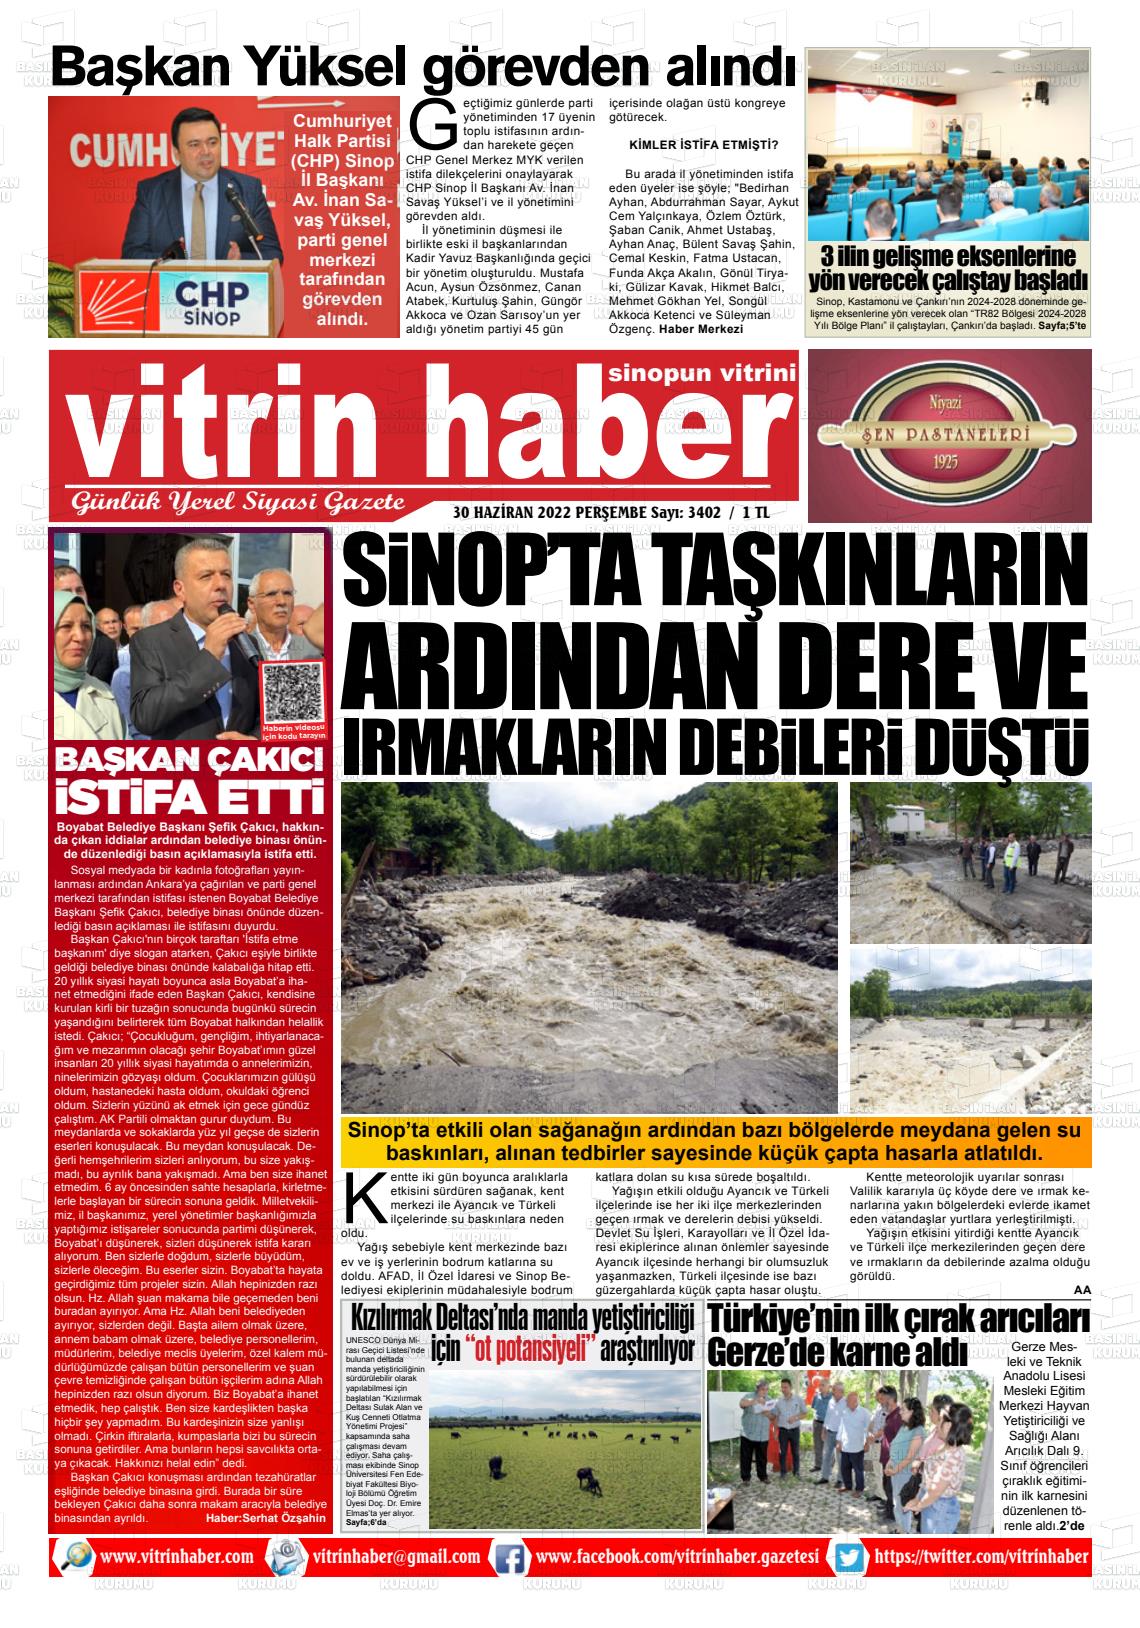 02 Temmuz 2022 Vitrin Haber Gazete Manşeti